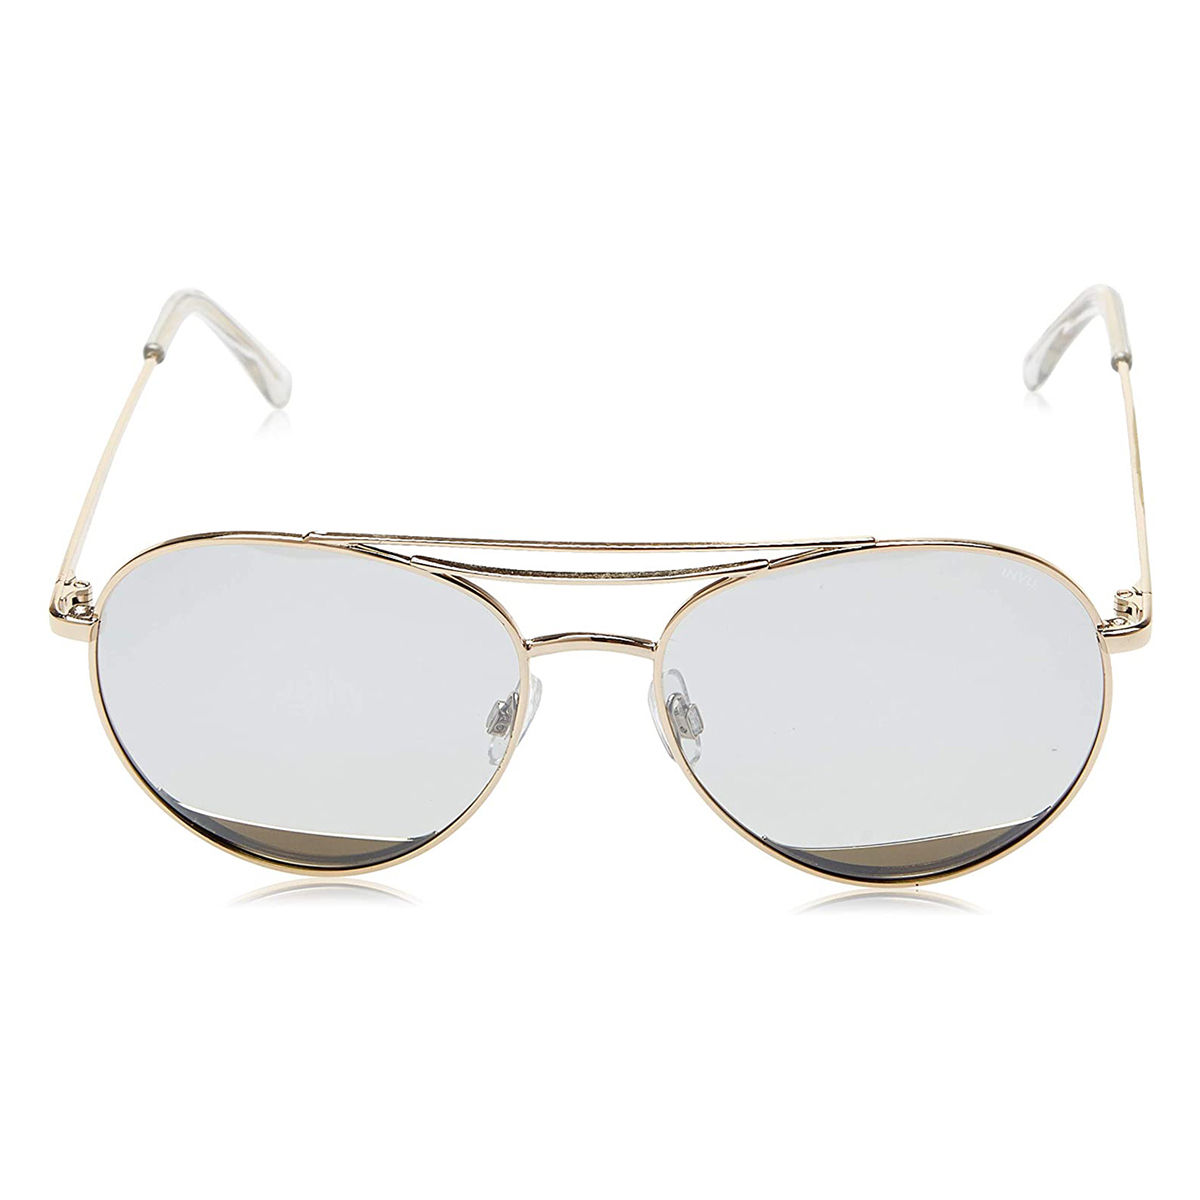 Invu Sunglasses Aviator With Grey Lens For Men